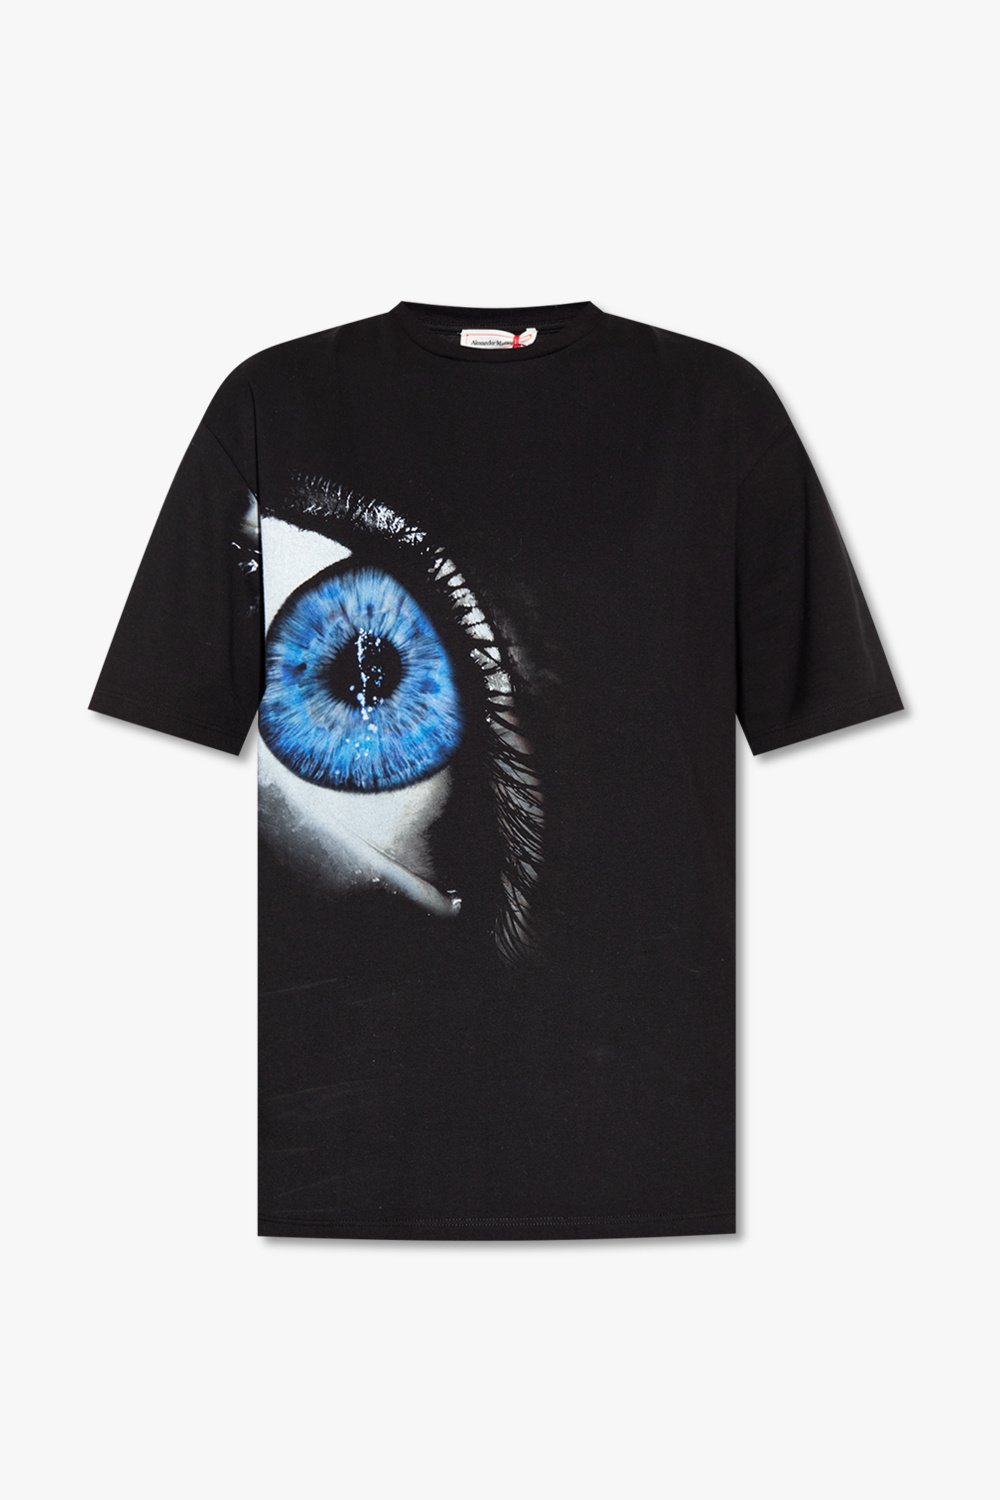 Alexander McQueen T-shirt with eye motif